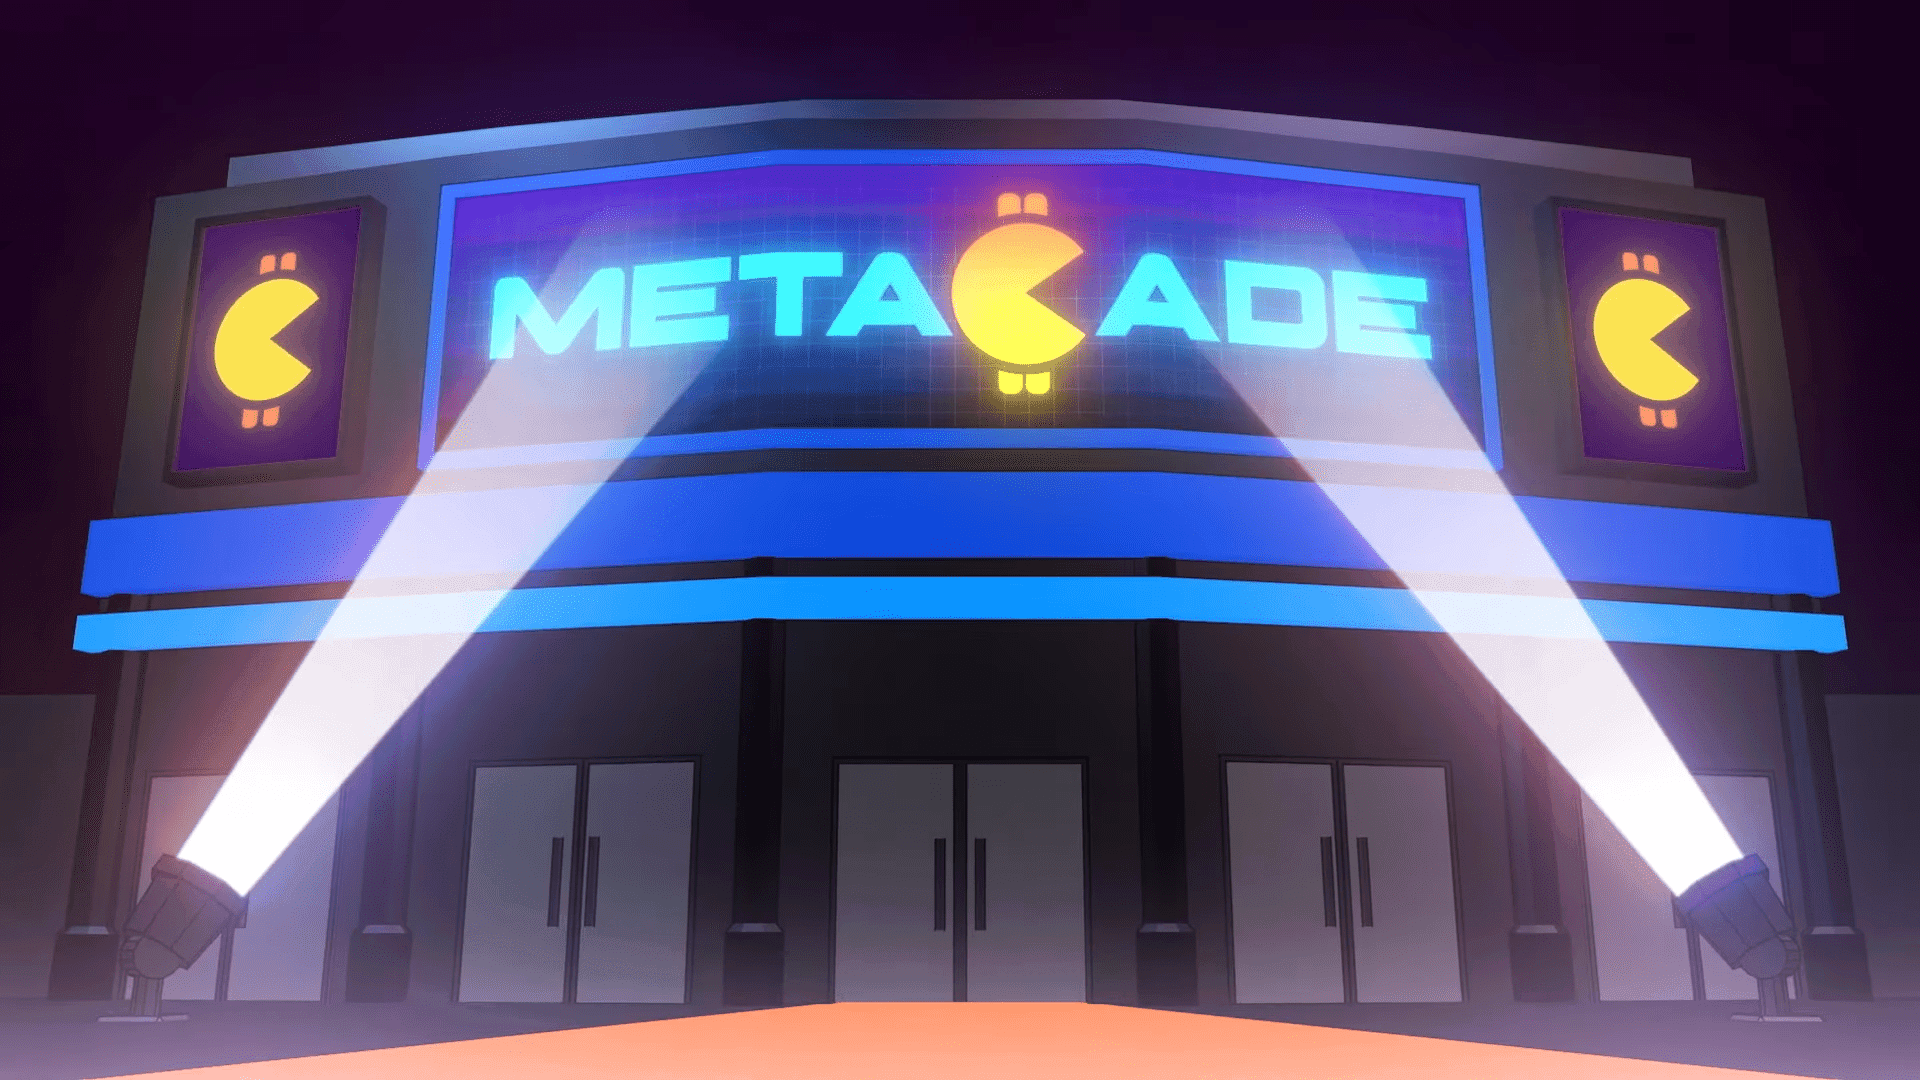 Metacade is een gamingplatform dat gamers en cryptoliefhebbers verenigt in een virtuele ruimte en samenwerkingen binnen GameFi en Web3 bevordert